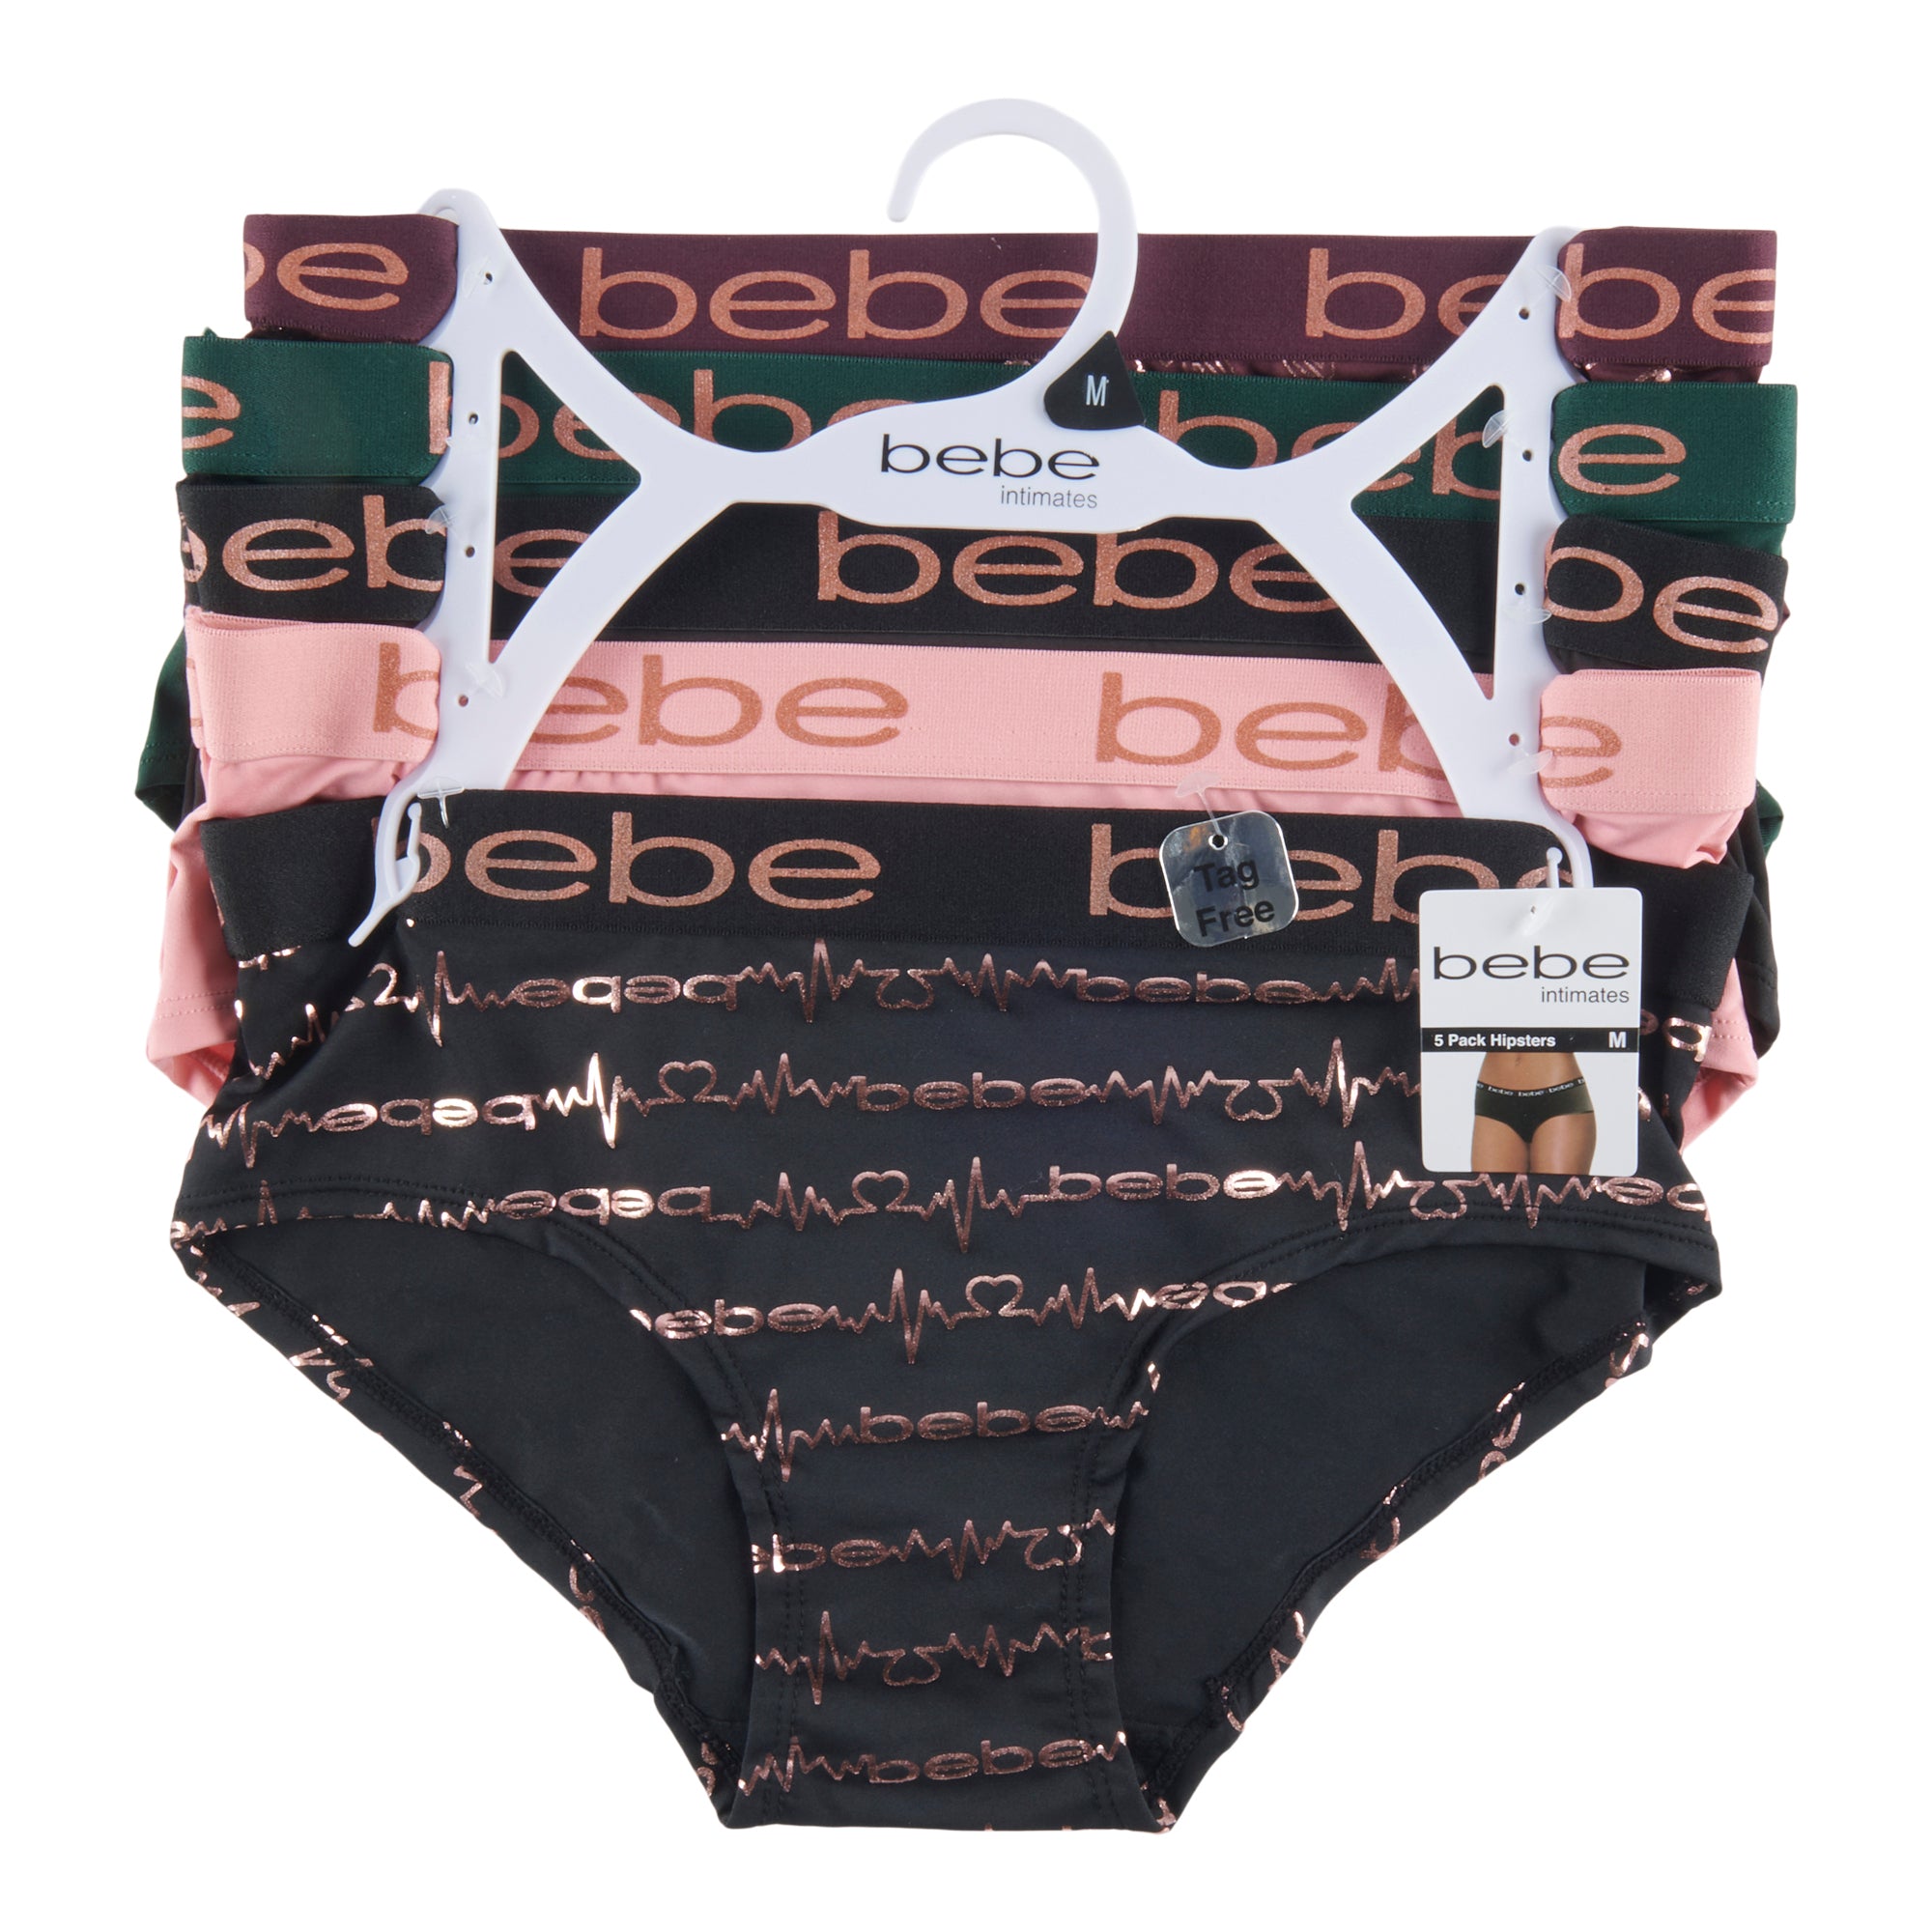 bebe Womens Multi Pack Elastic Waist Boyshort Panties, Lt. Rouge, Medium :  : Clothing, Shoes & Accessories